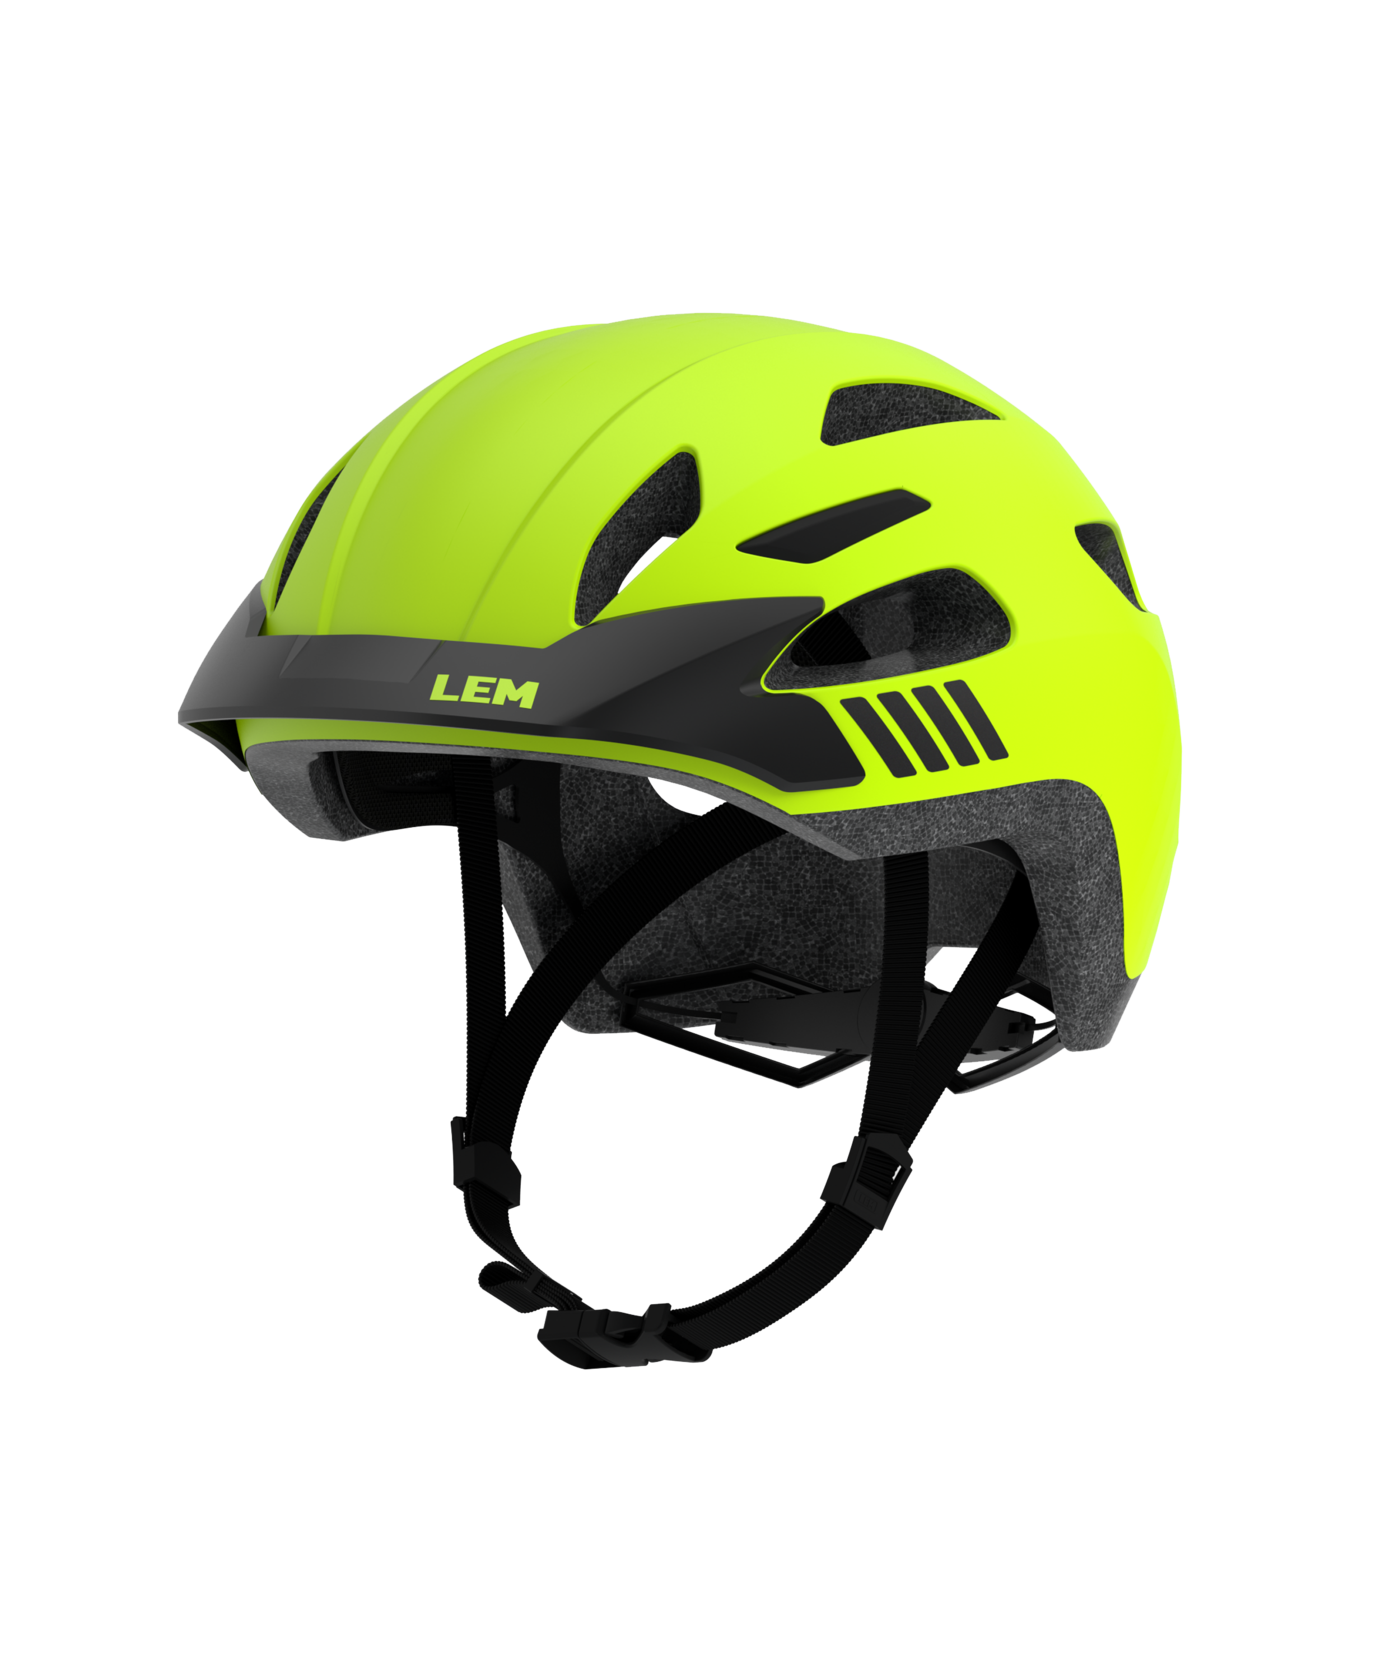 LEM Express Commuter Helmet with Light